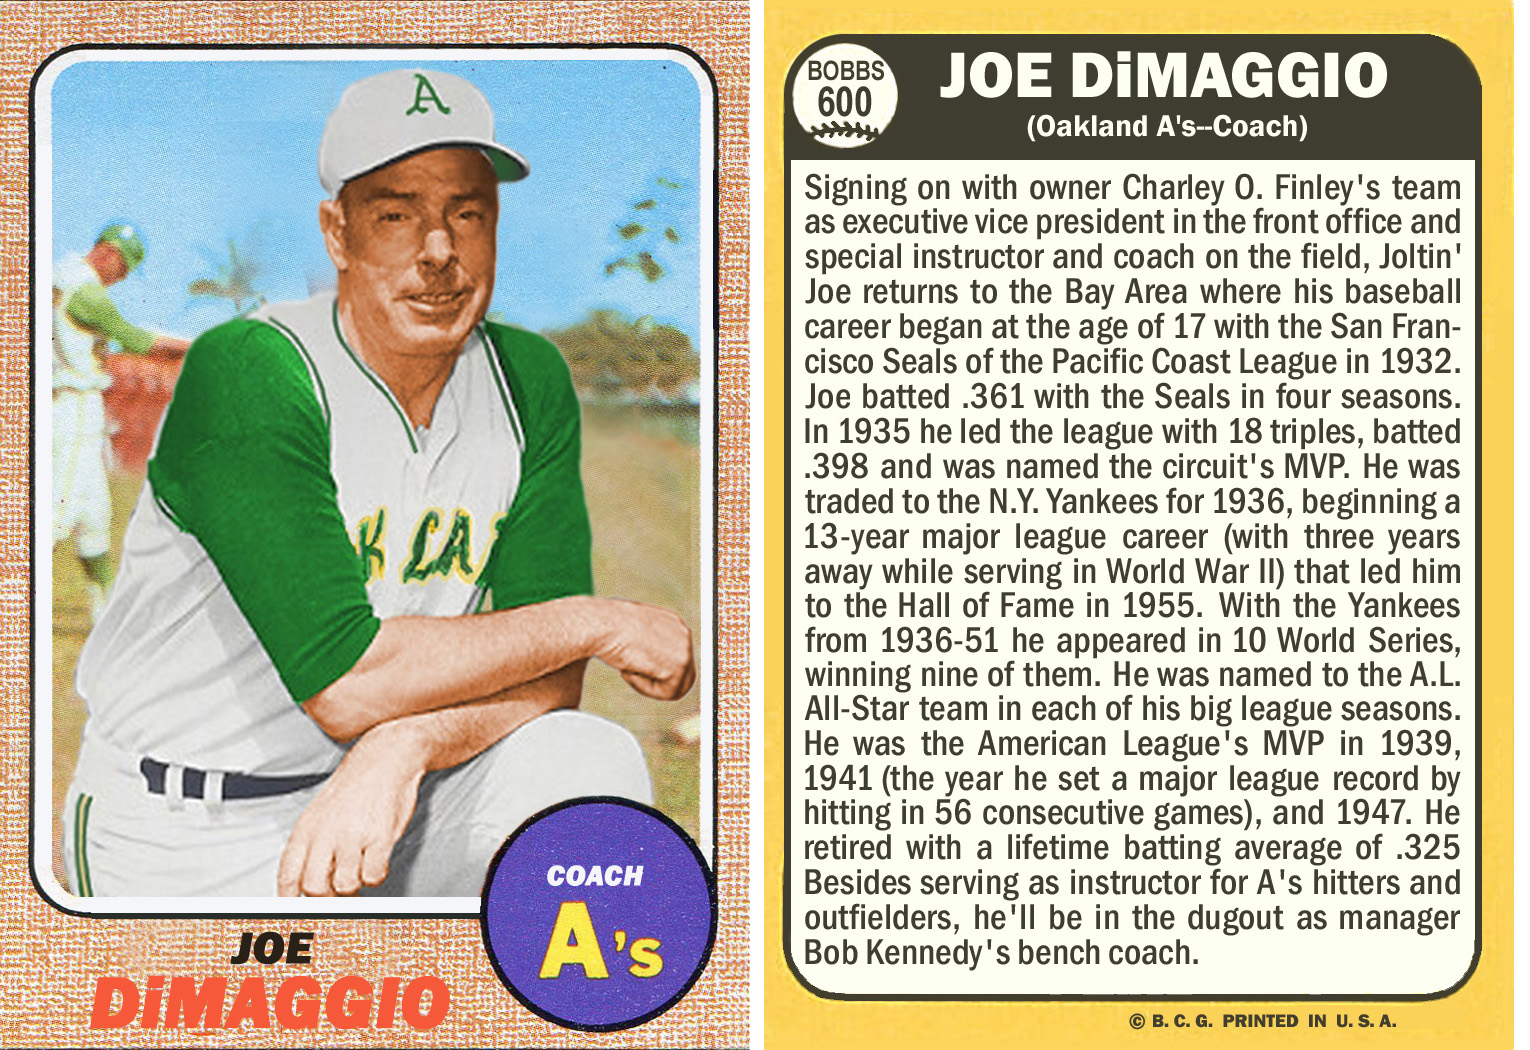 Joe DiMaggio as Oakland A's coach